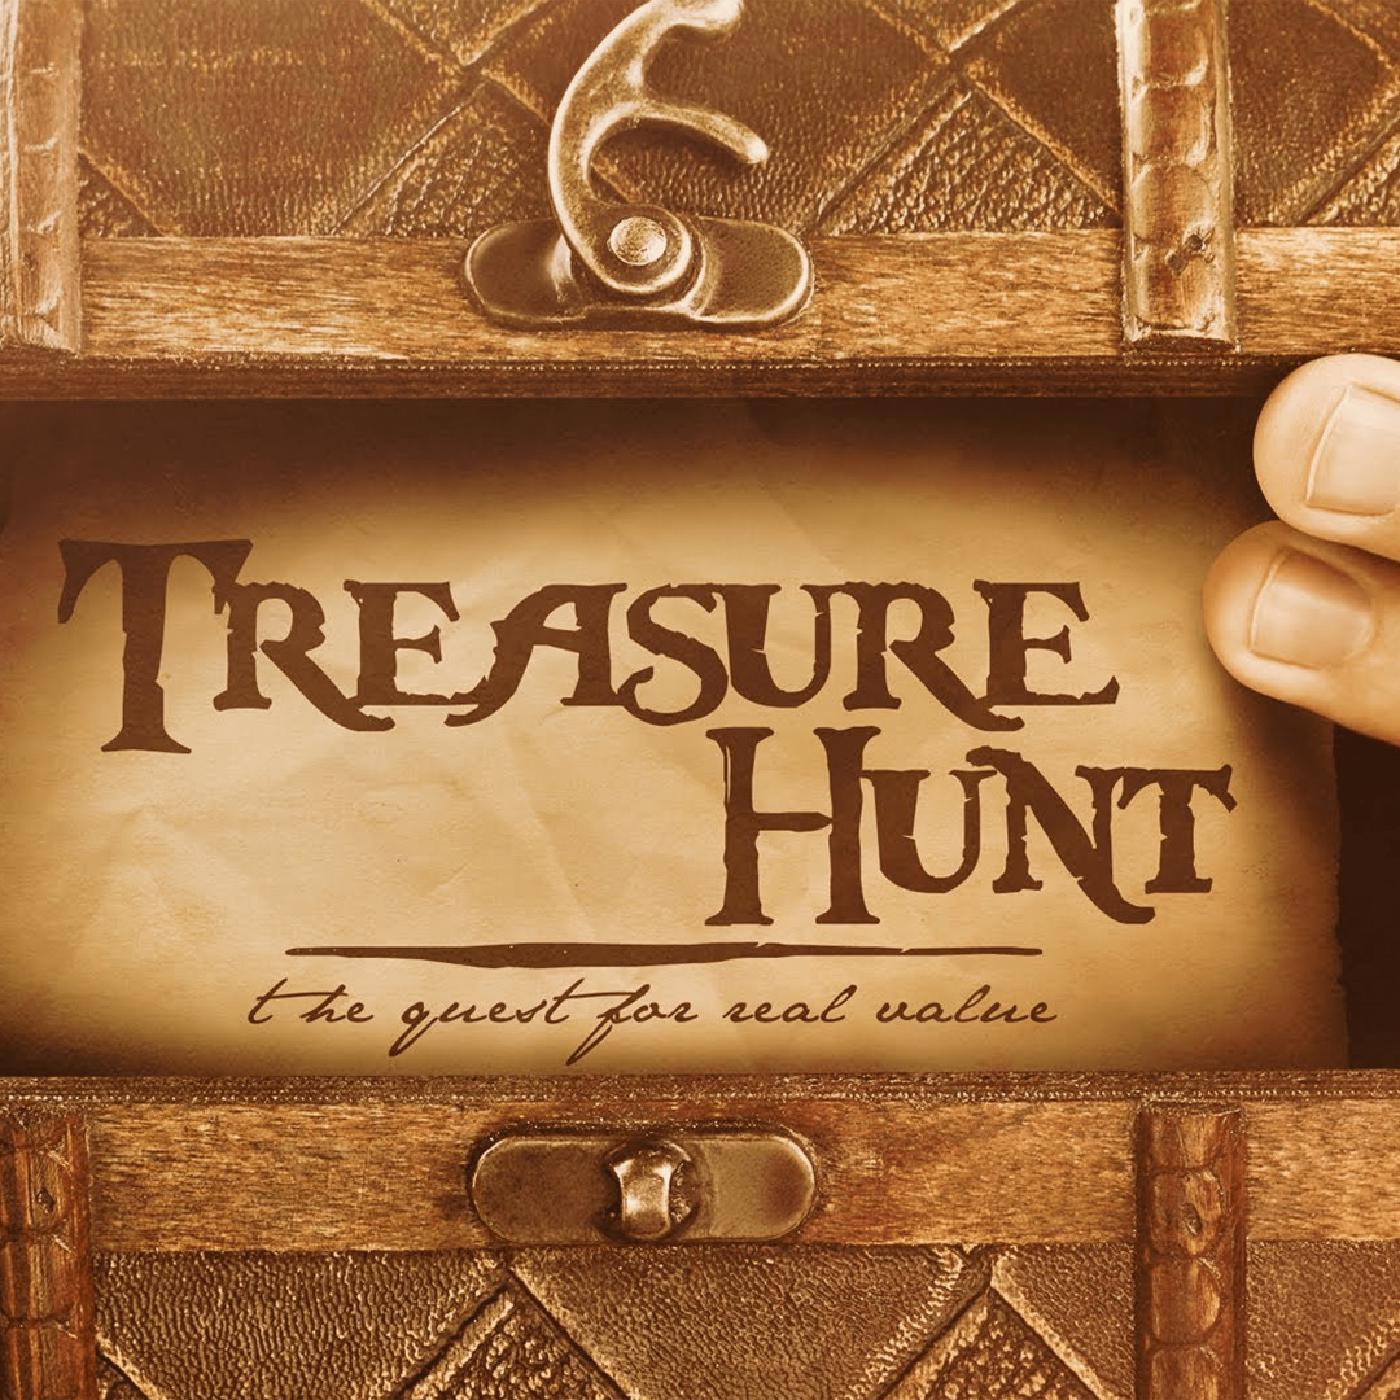 Treasure Hunts